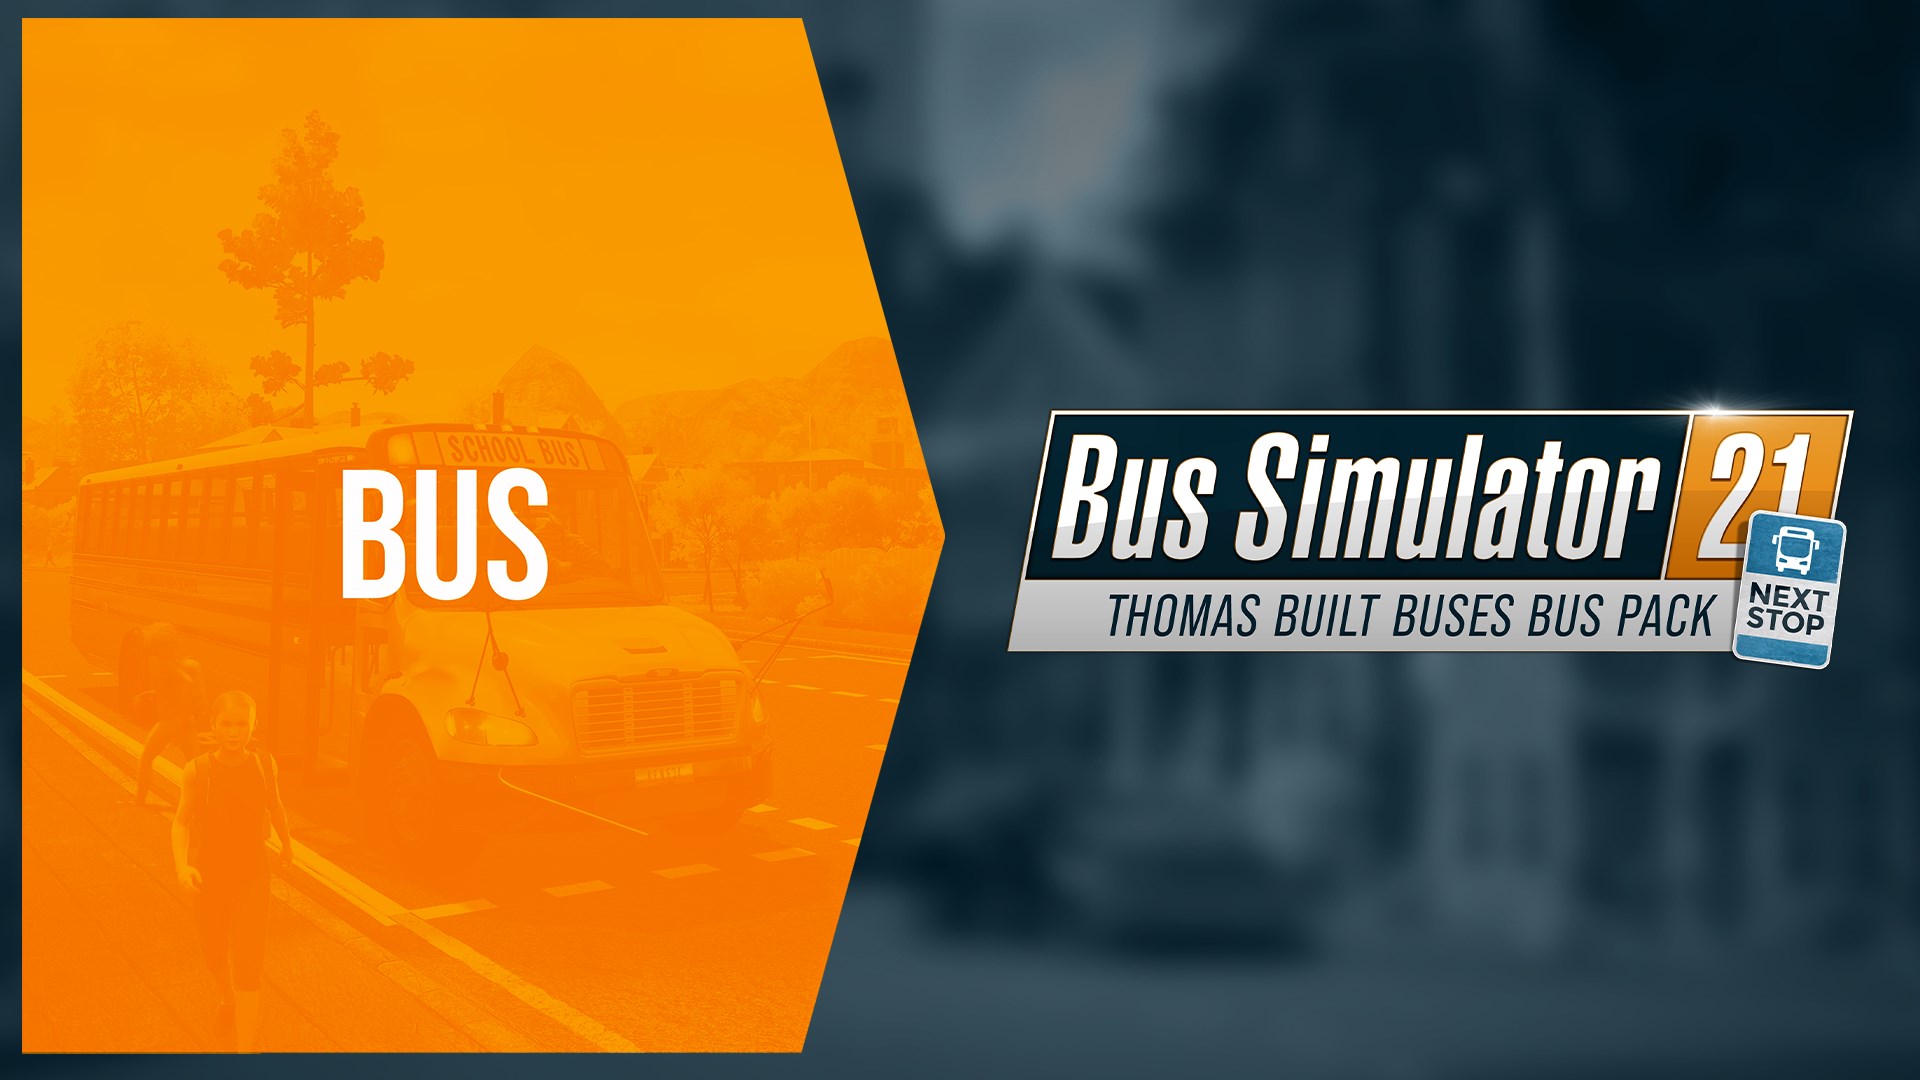 Built Pack Simulator en-MP Buy Stop Bus Next - - Bus 21 Thomas Microsoft Store Buses